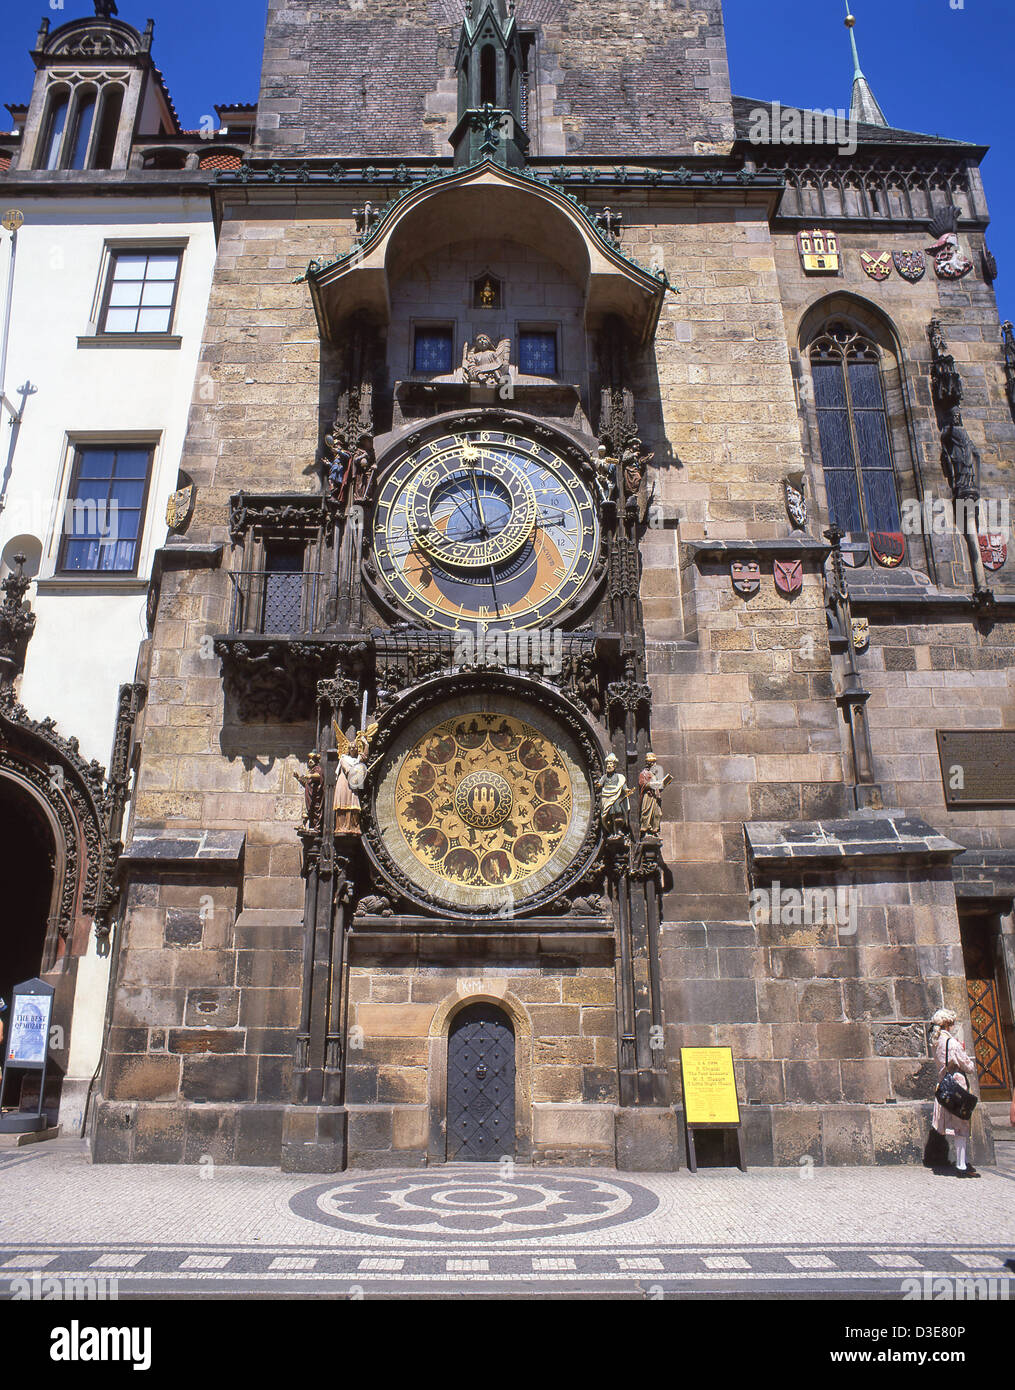 Orologio astronomico medievale, Piazza della città Vecchia, città Vecchia (Staré Město), Praga (Praha), Cechia Foto Stock